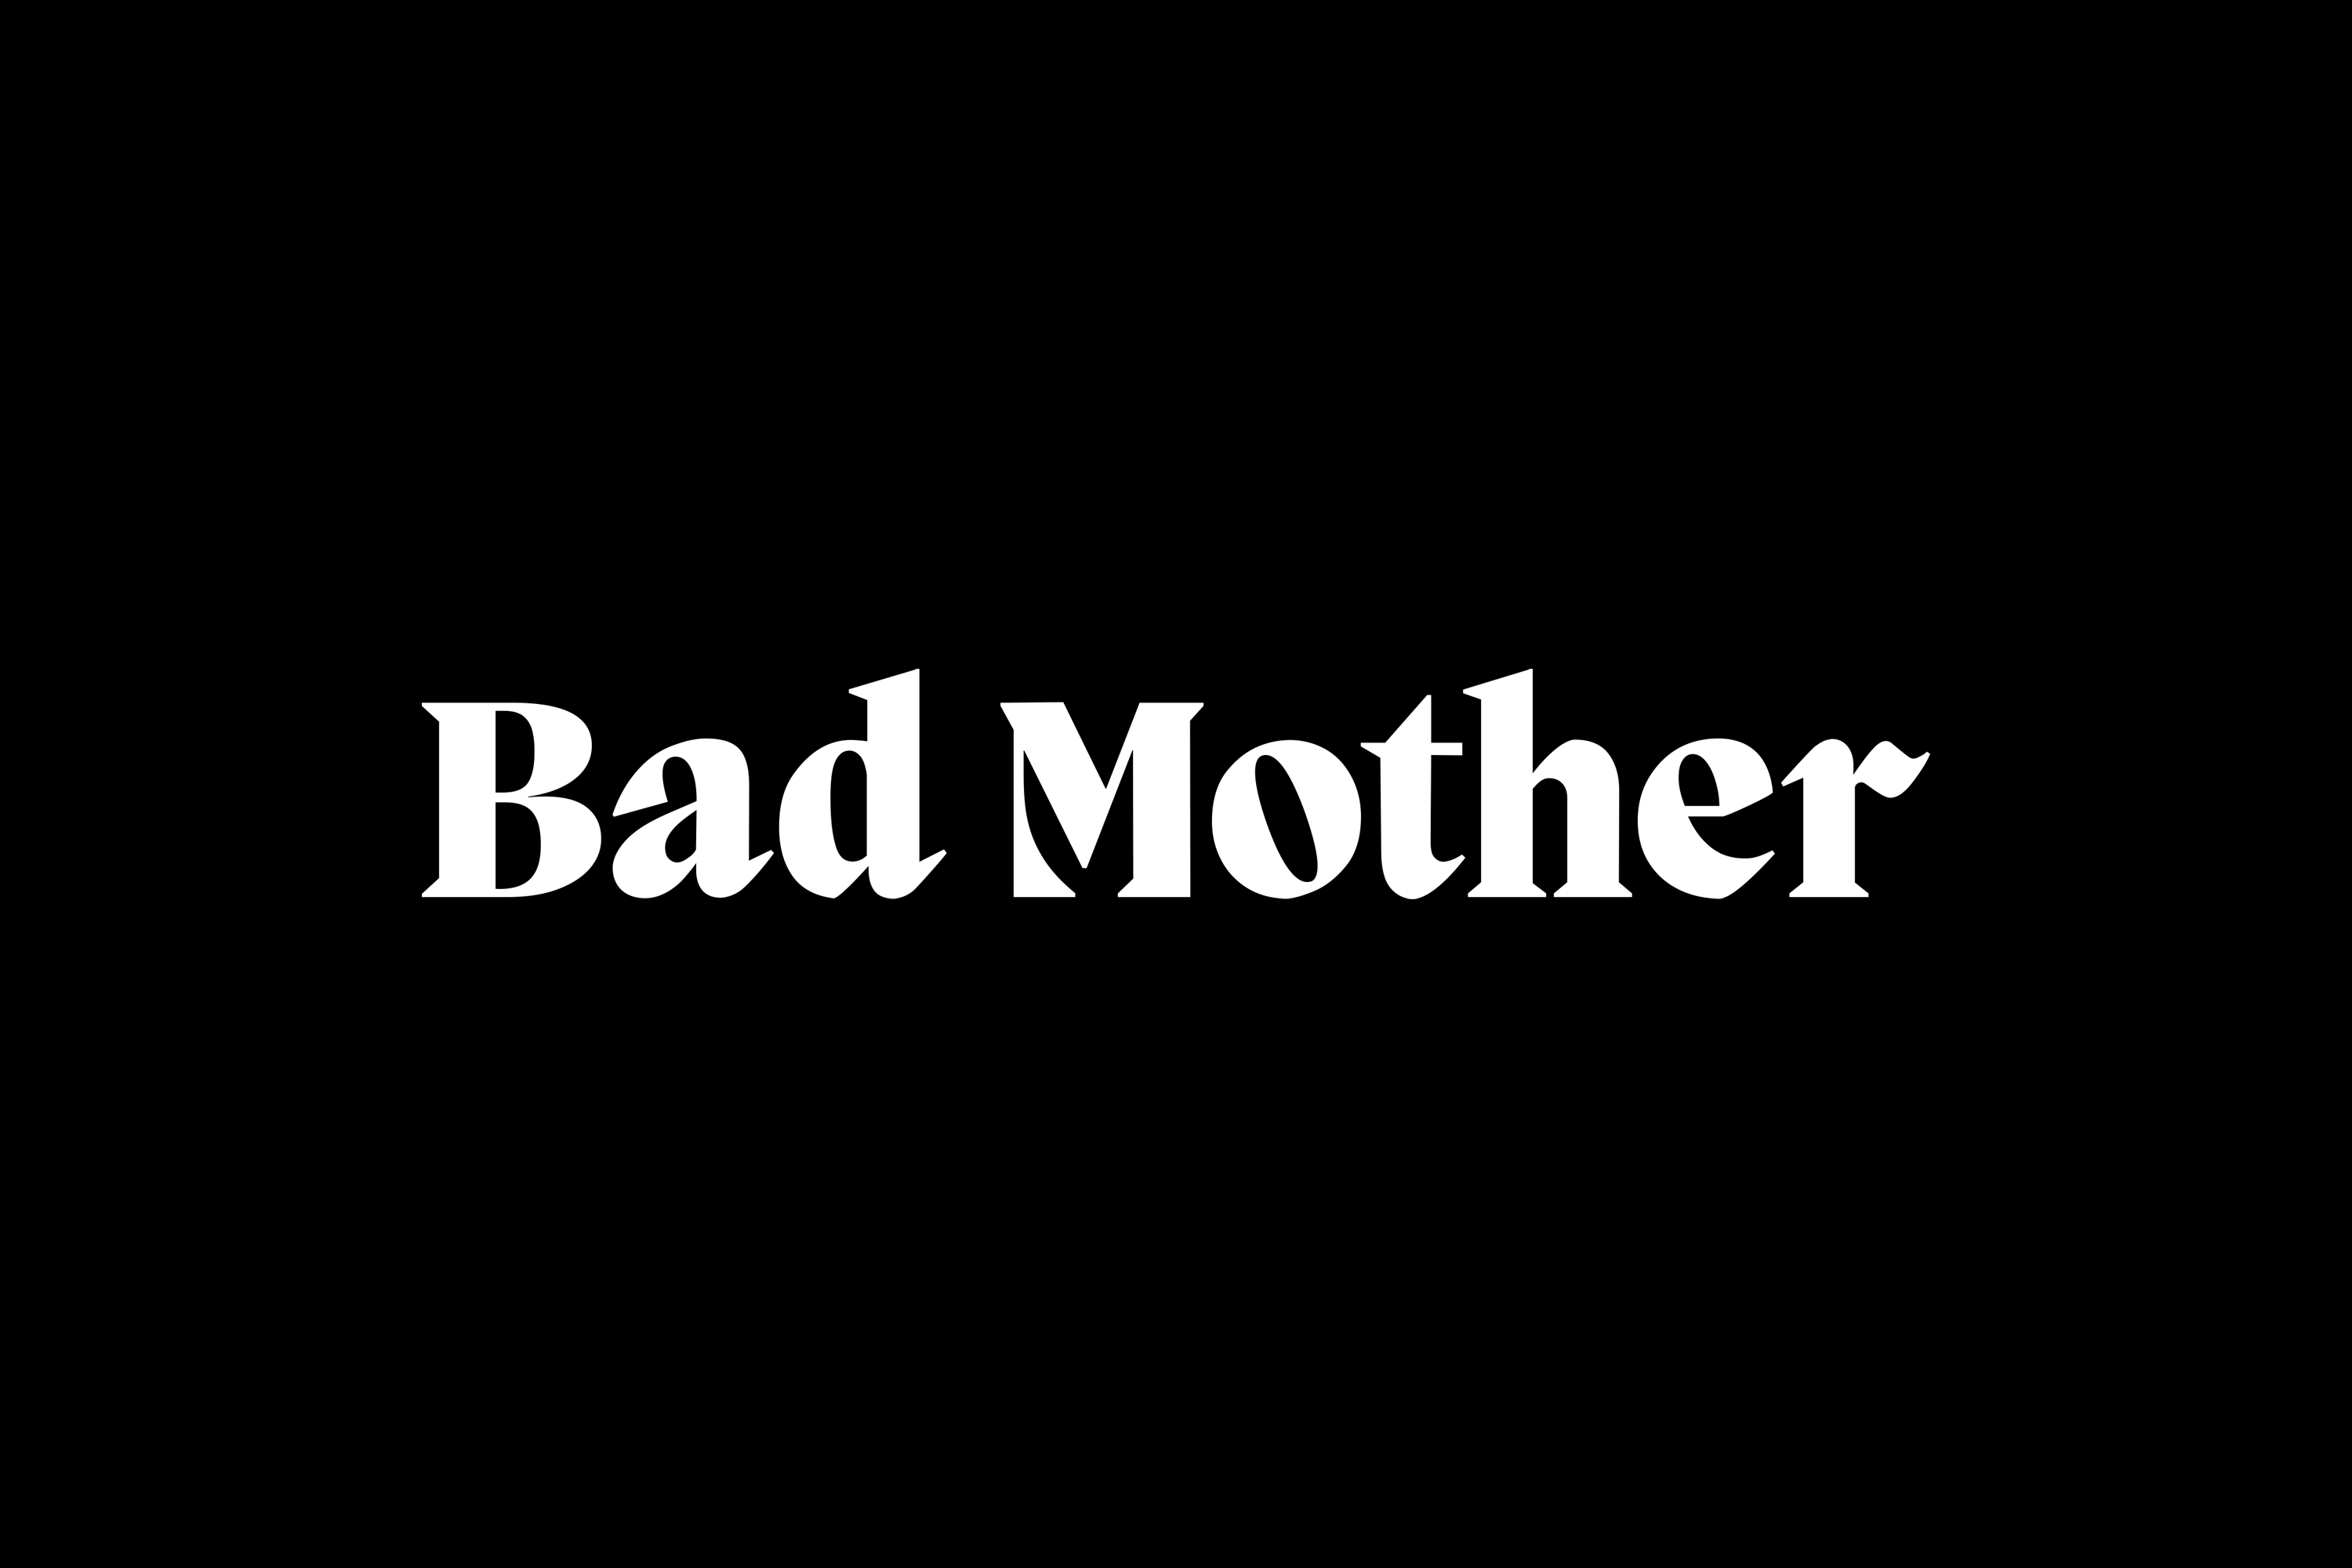 Chris-Reynolds-Logos-Bad-Mother-Logotype